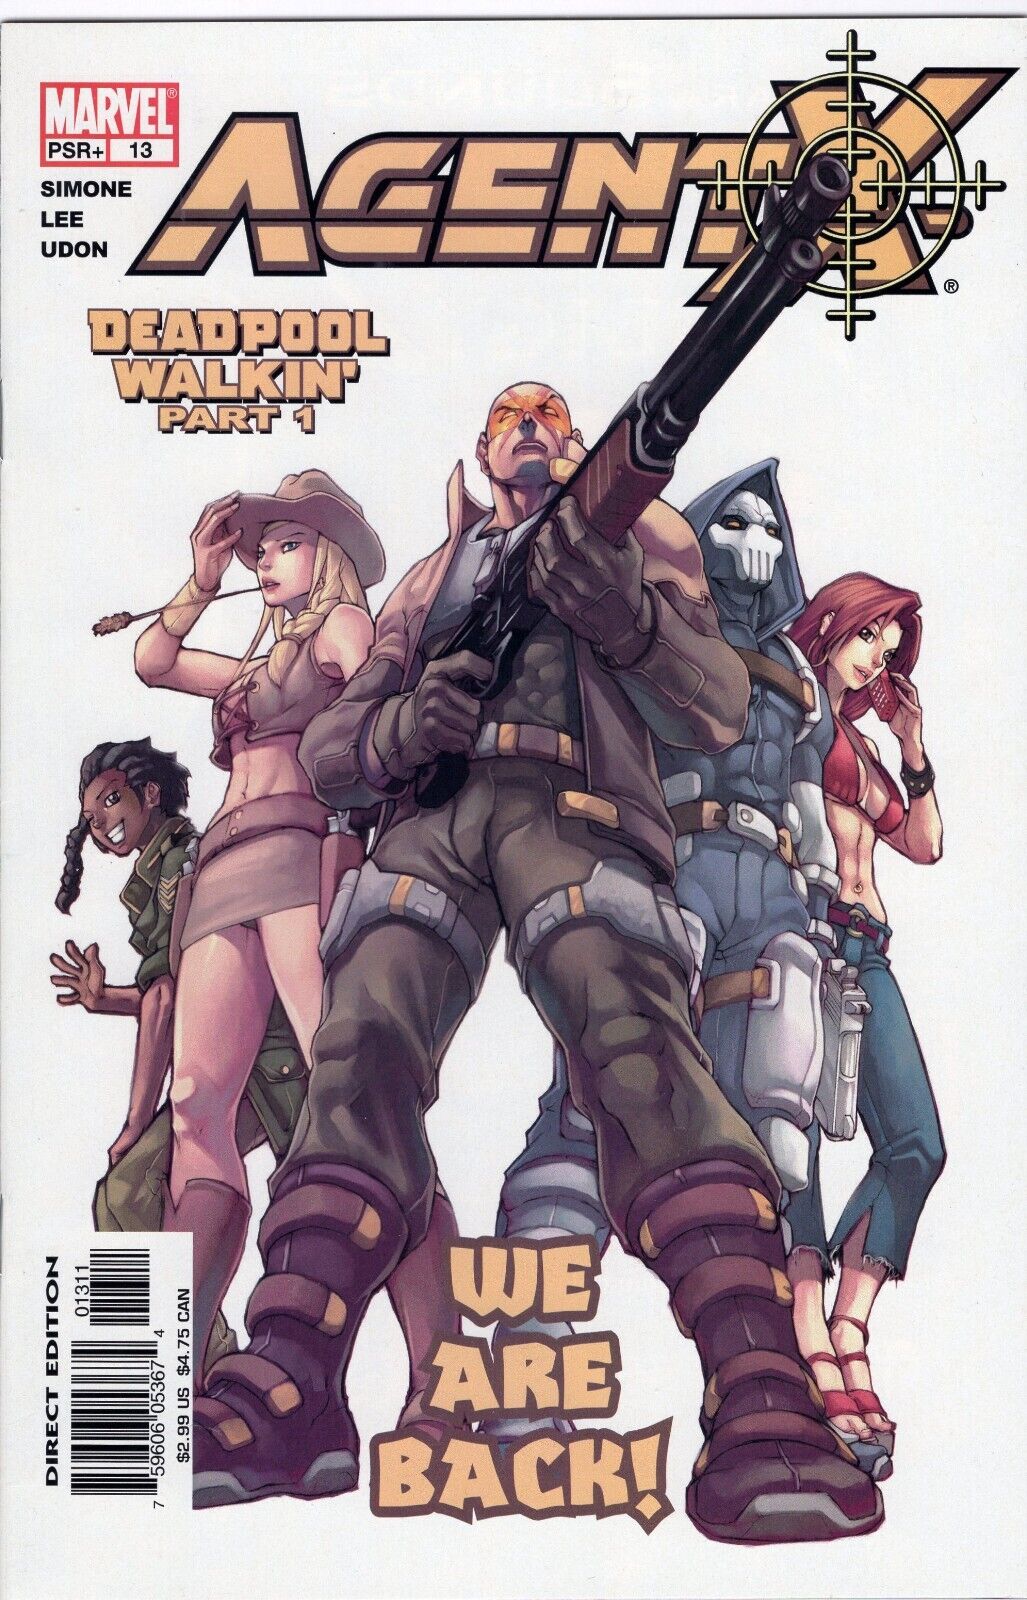 DEADPOOL - Agent X #13,14,15 Deadpool Walkin\' Parts 1-3 (Marvel Comics, 2002)